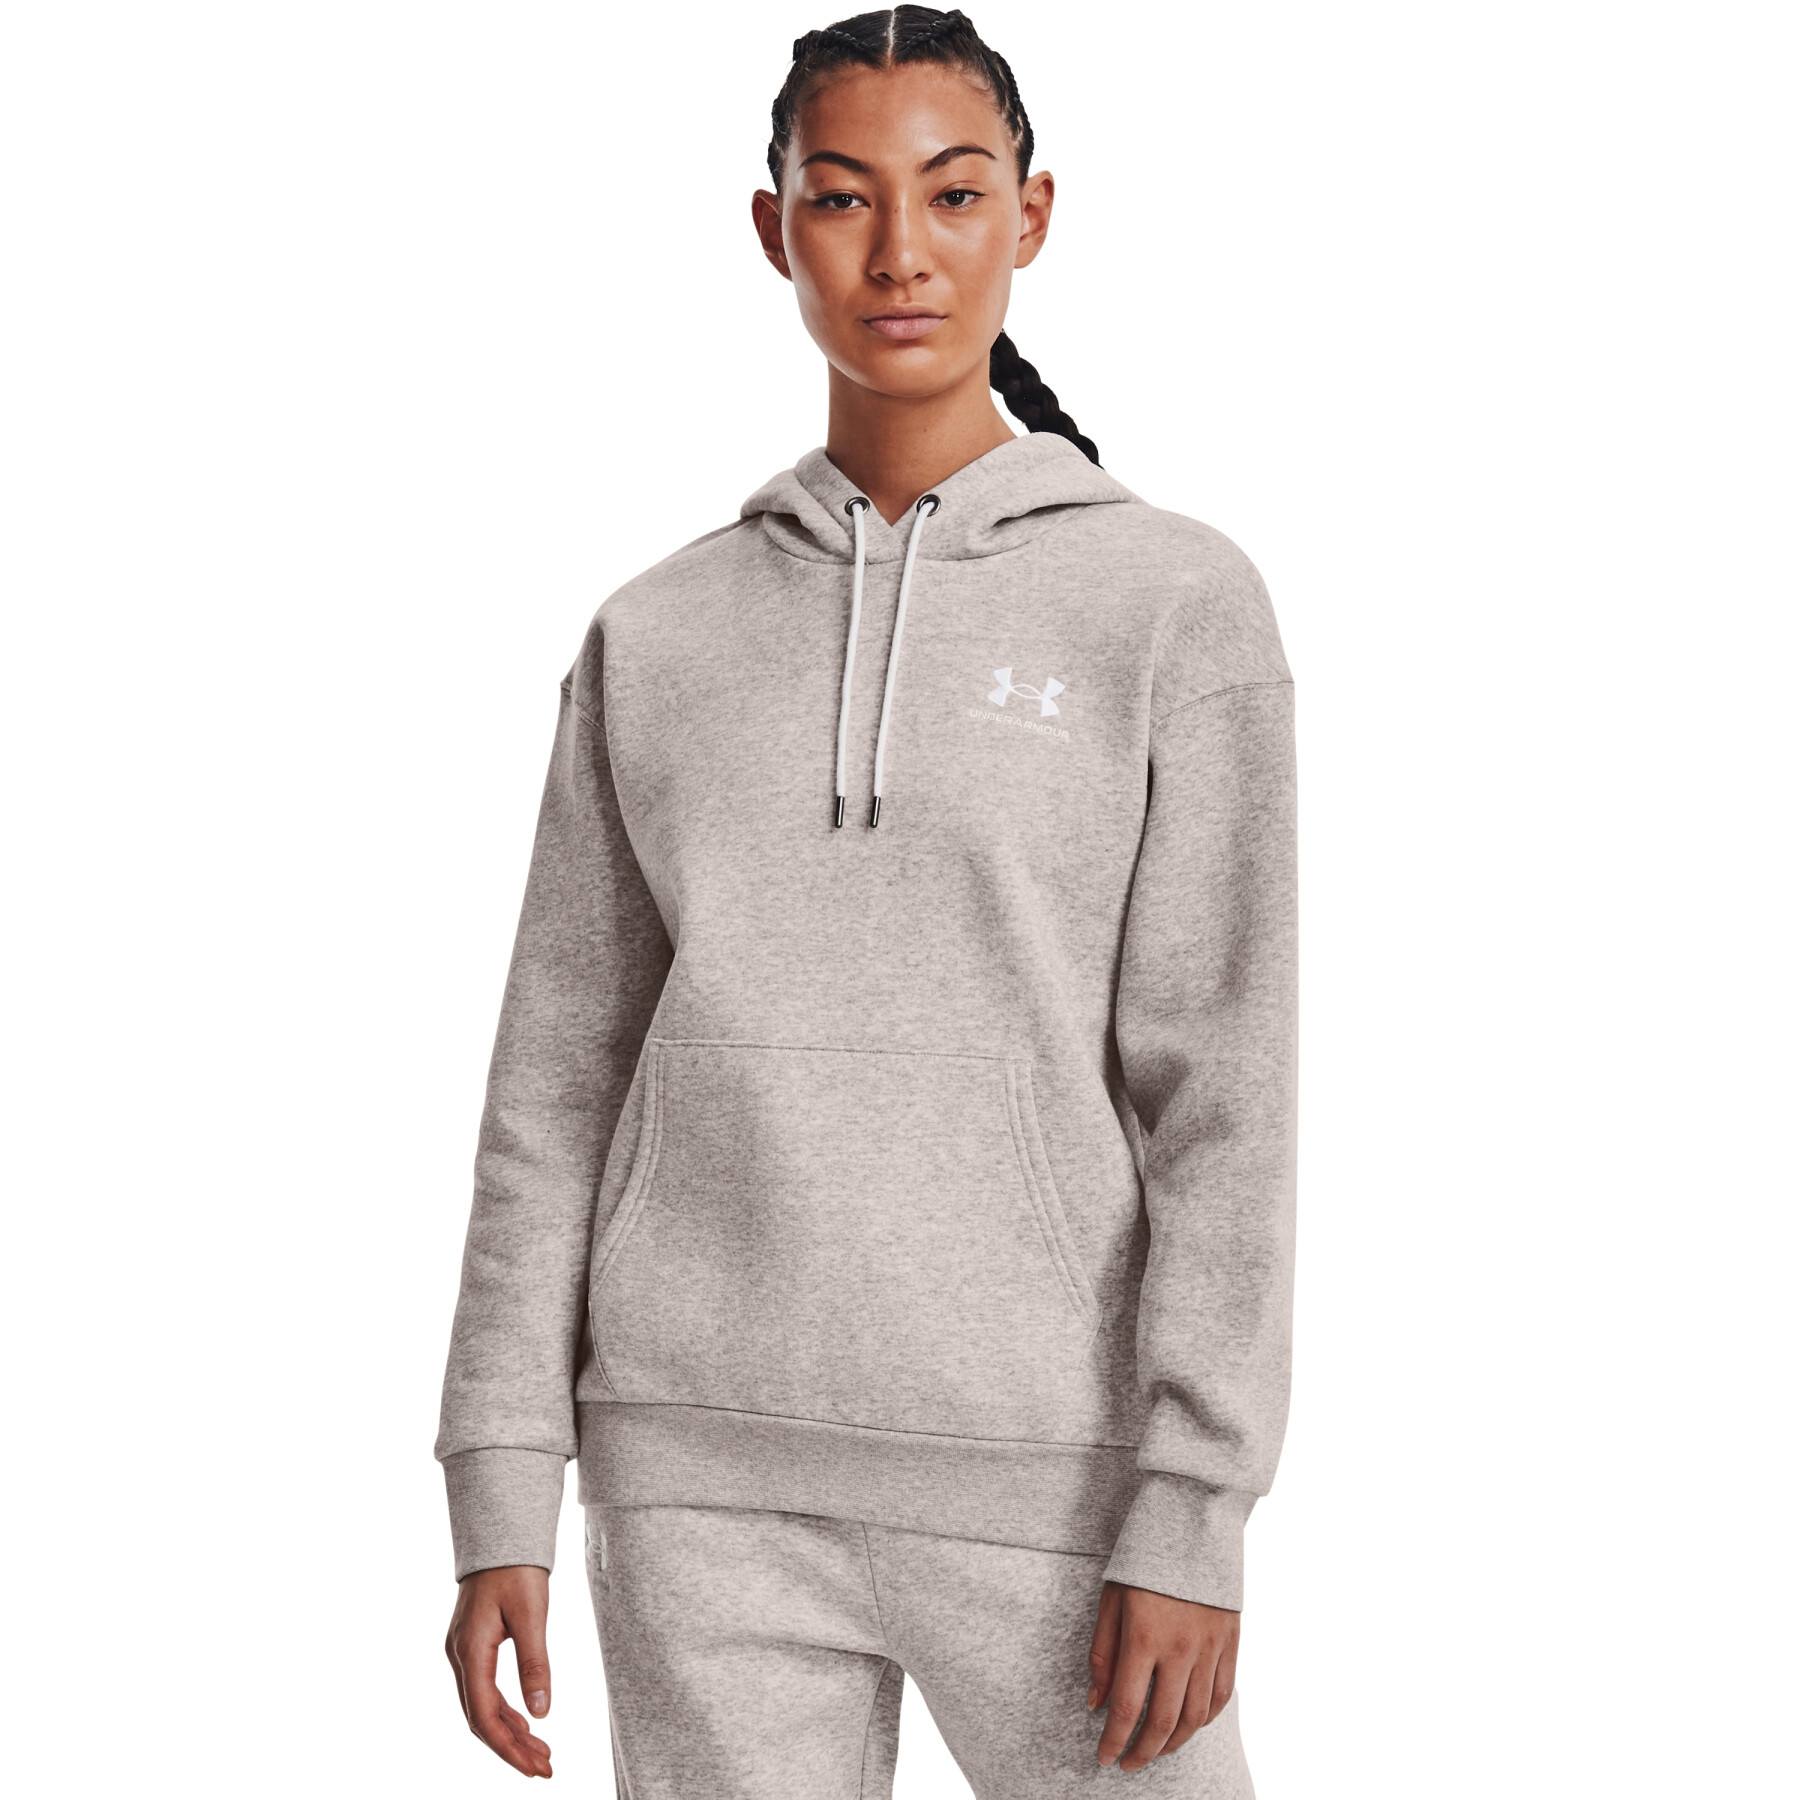 Women's hooded sweatshirt Under Armour Essential Fleece